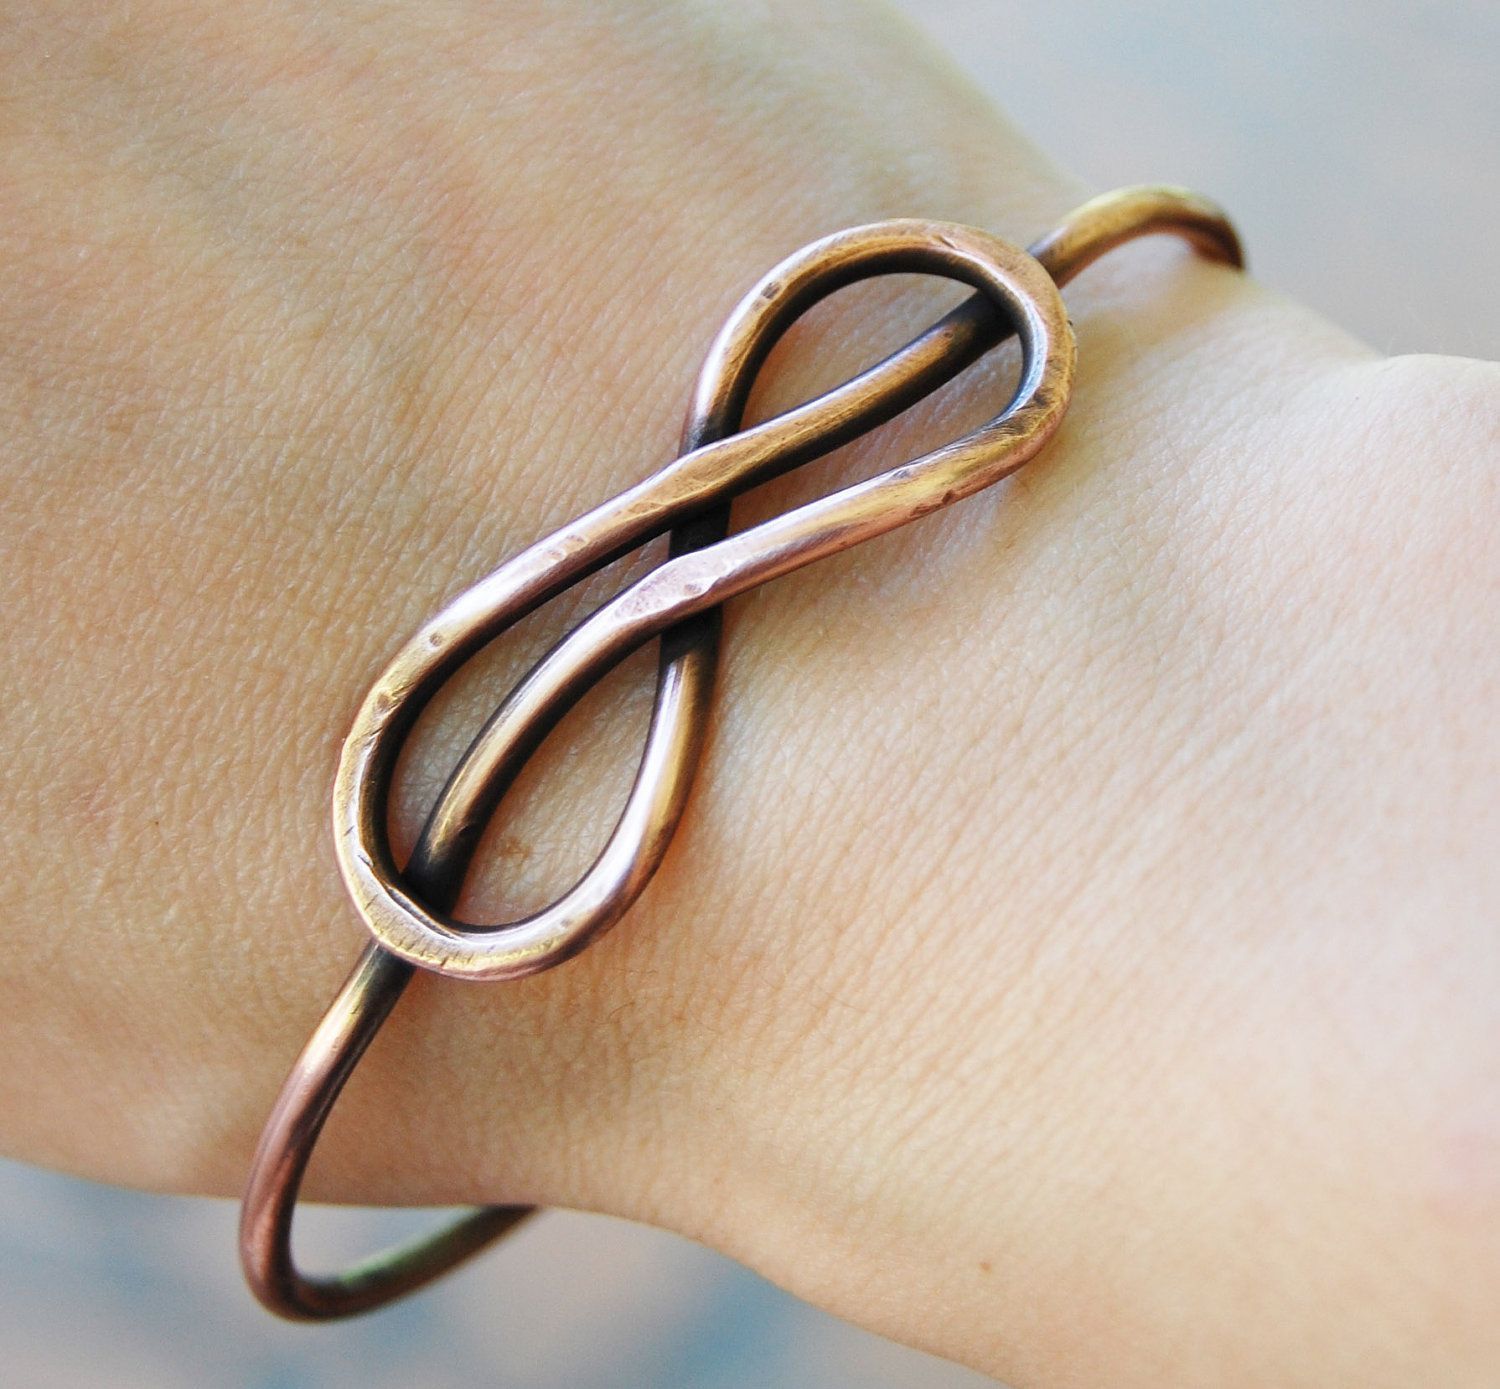 Copper Wire Jewelry | Infinity Knot Bangle, Oxidized Copper, Wire jewelry  …